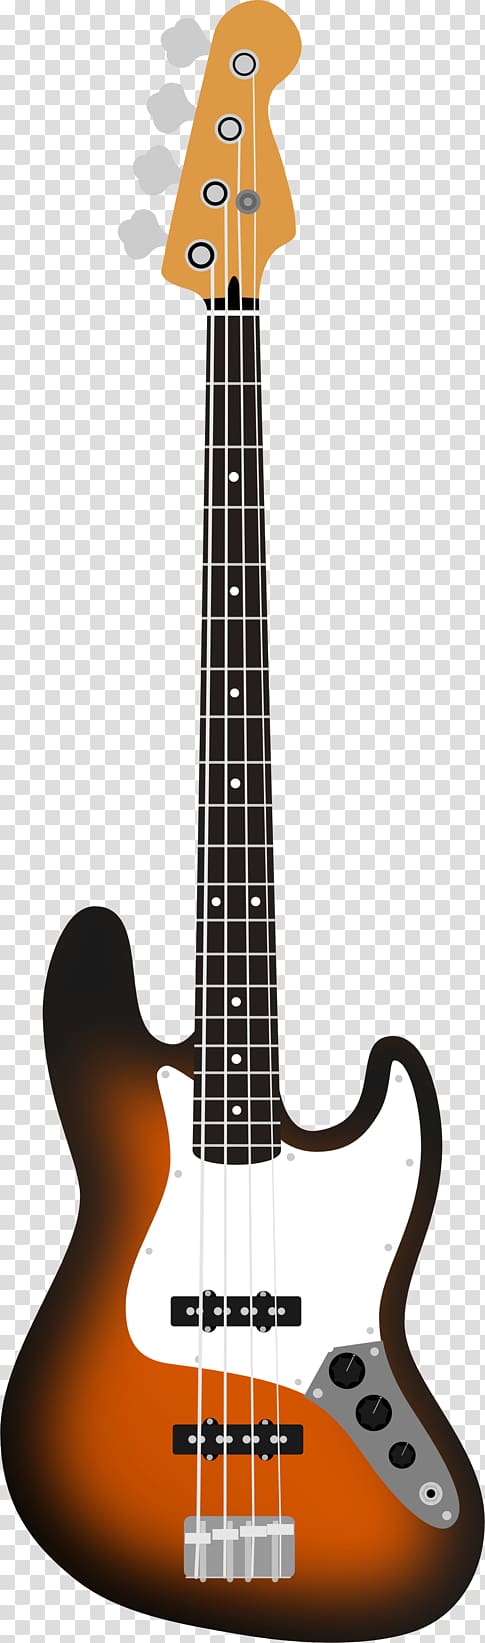 Fender Jazz Bass Fender Musical Instruments Corporation Bass guitar Fingerboard Fender Aerodyne Jazz Bass, fender jazz bass transparent background PNG clipart